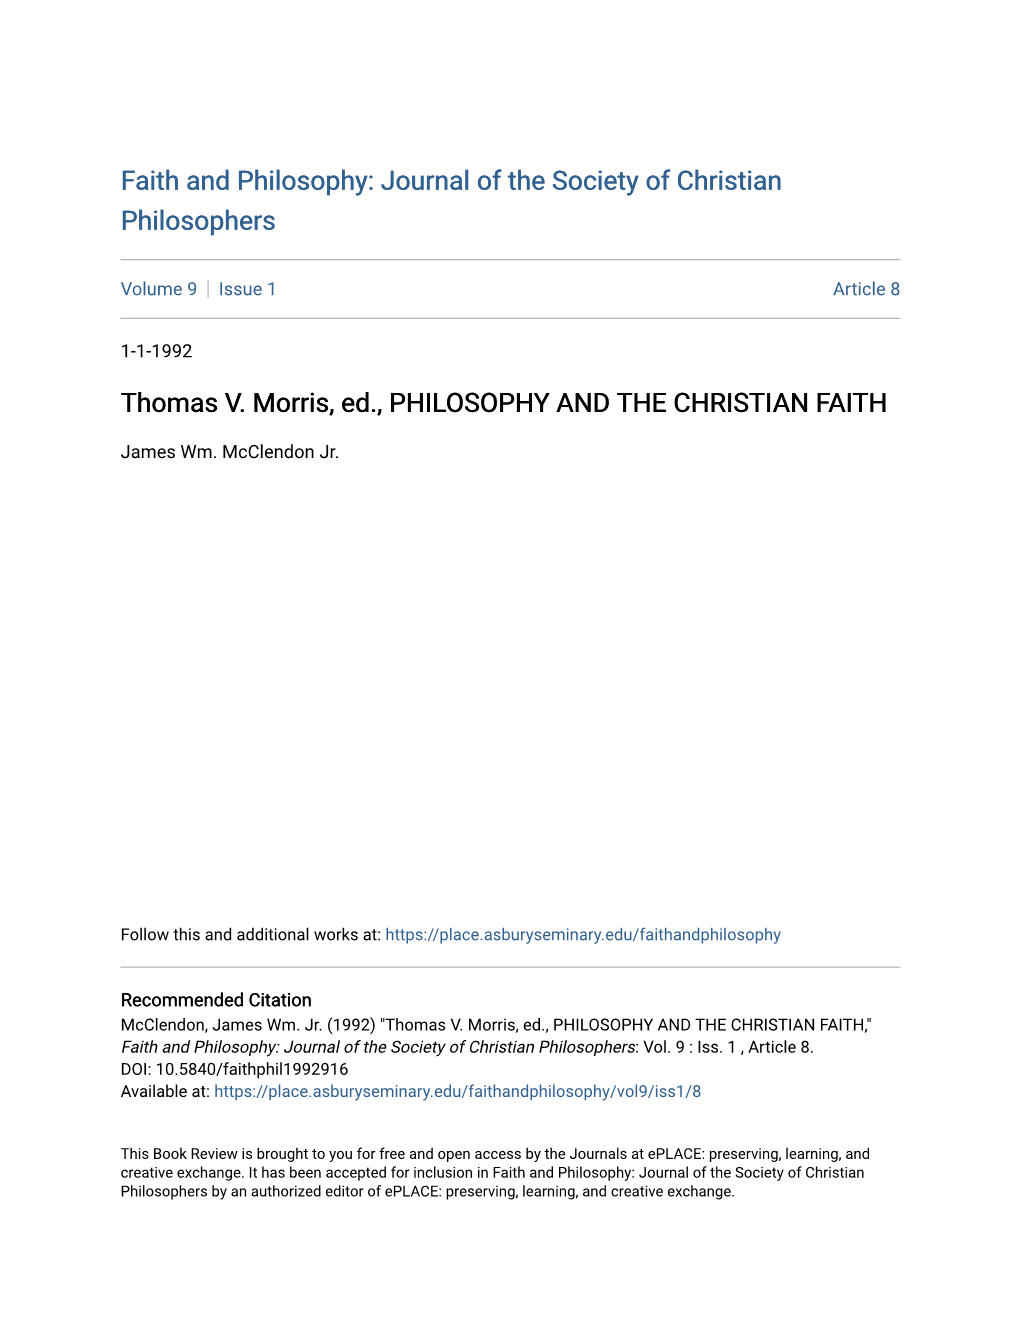 Thomas V. Morris, Ed., PHILOSOPHY and the CHRISTIAN FAITH